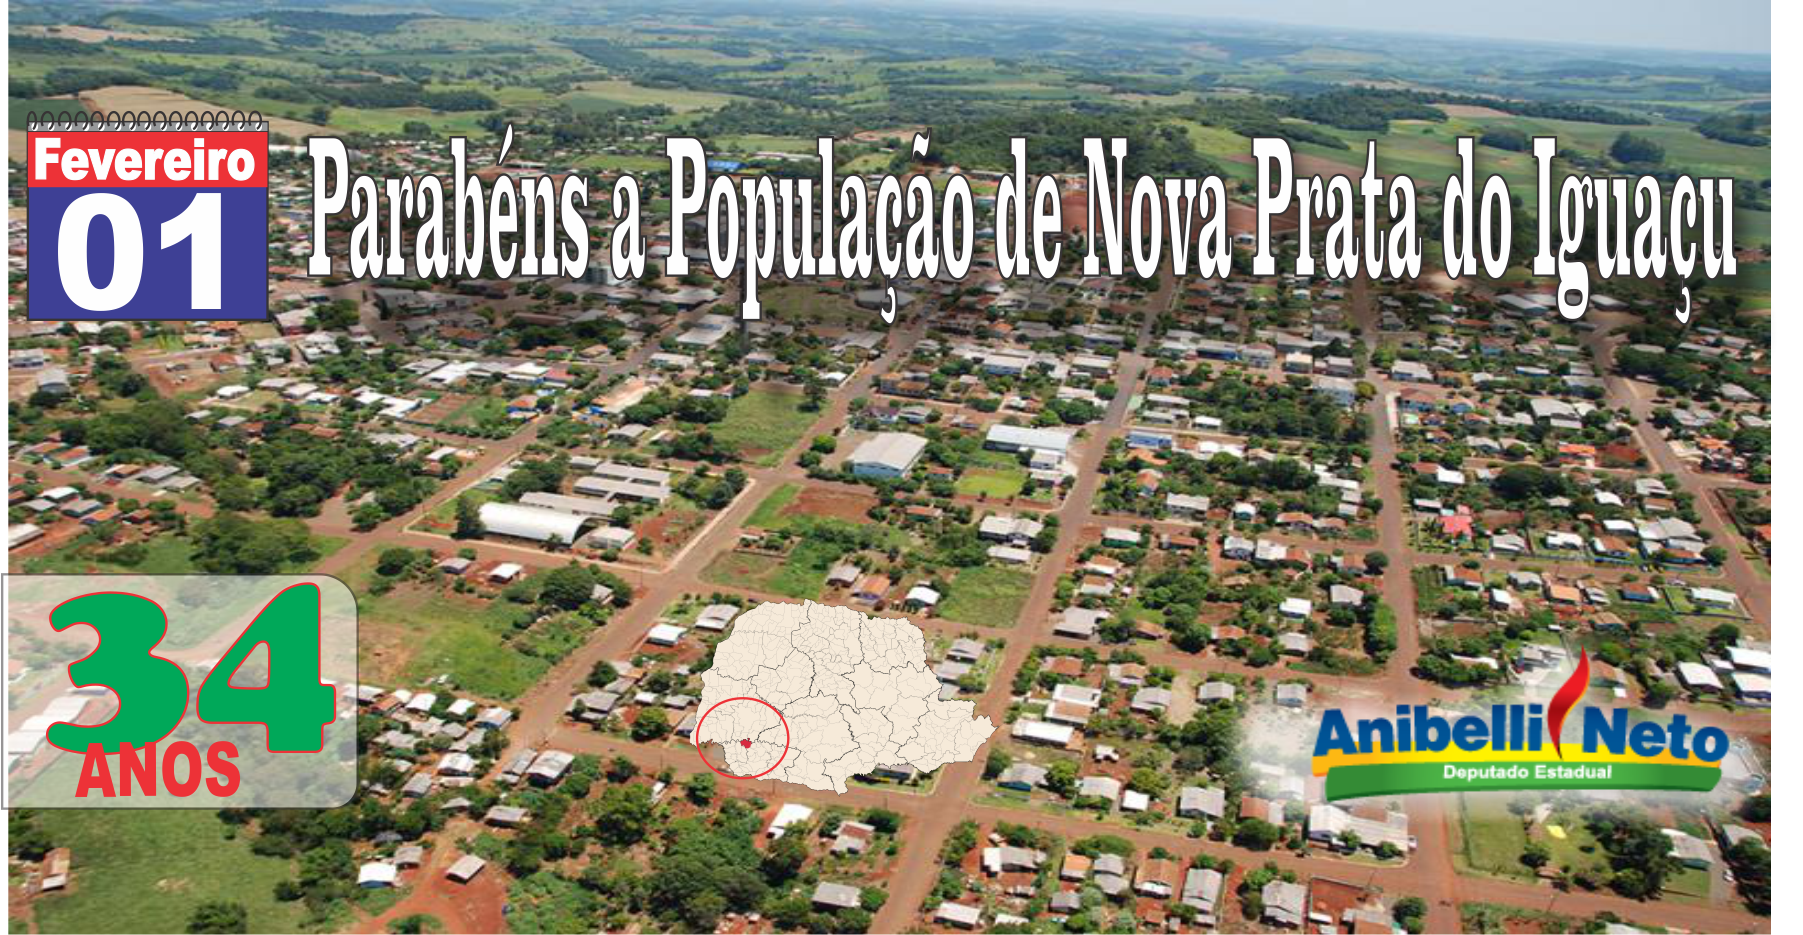 Parabéns a População de Nova Prata do Iguaçu